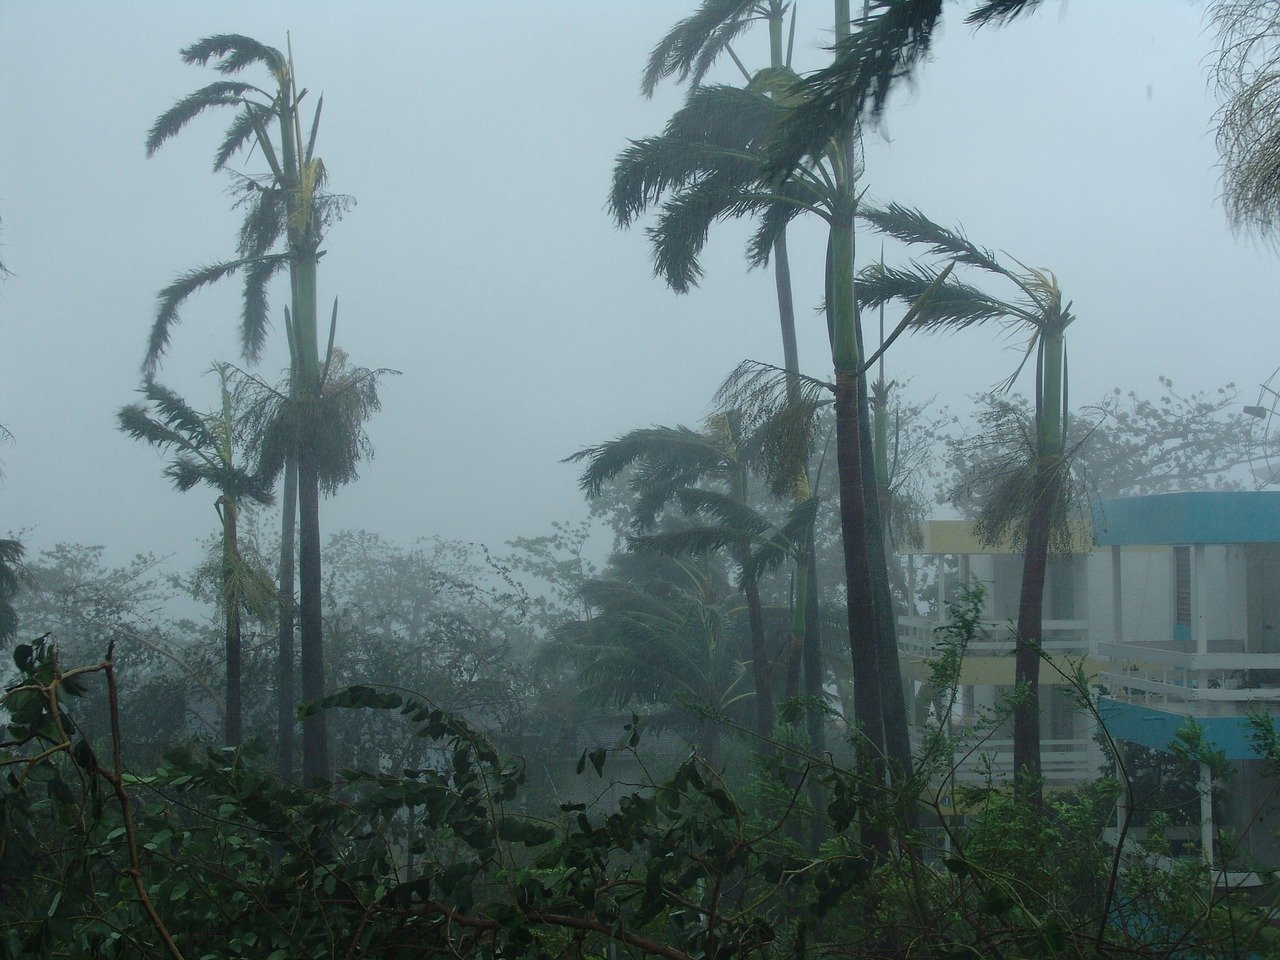 Hurricane damaged trees